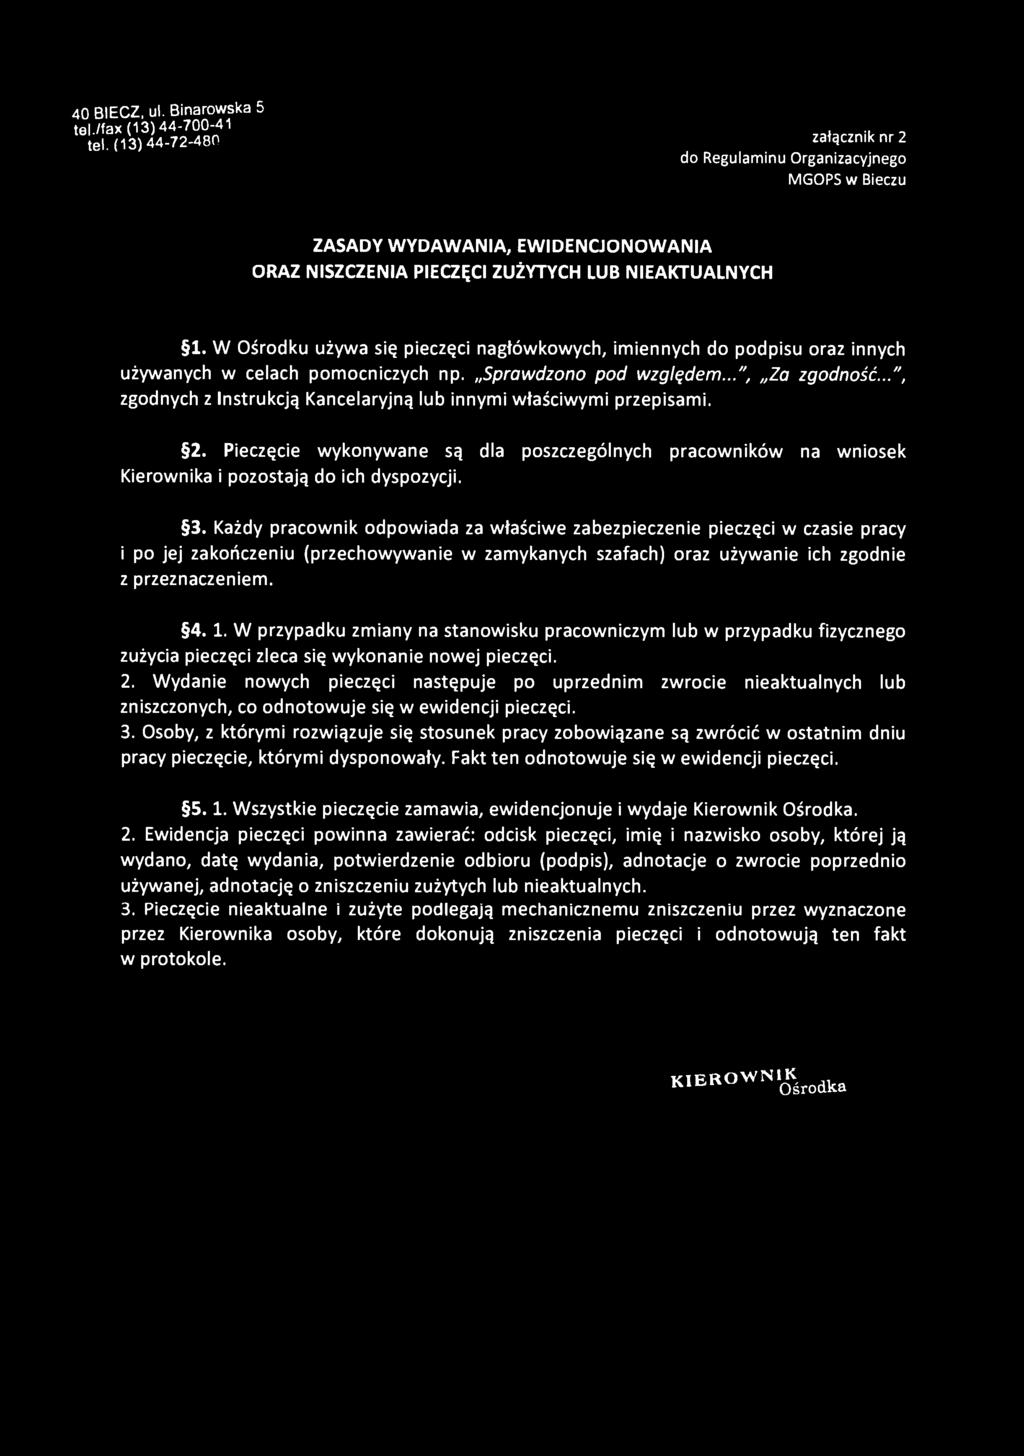 40 BIECZ, ul. Binarowska 5 tel./fax (13)44-700-41 tel.